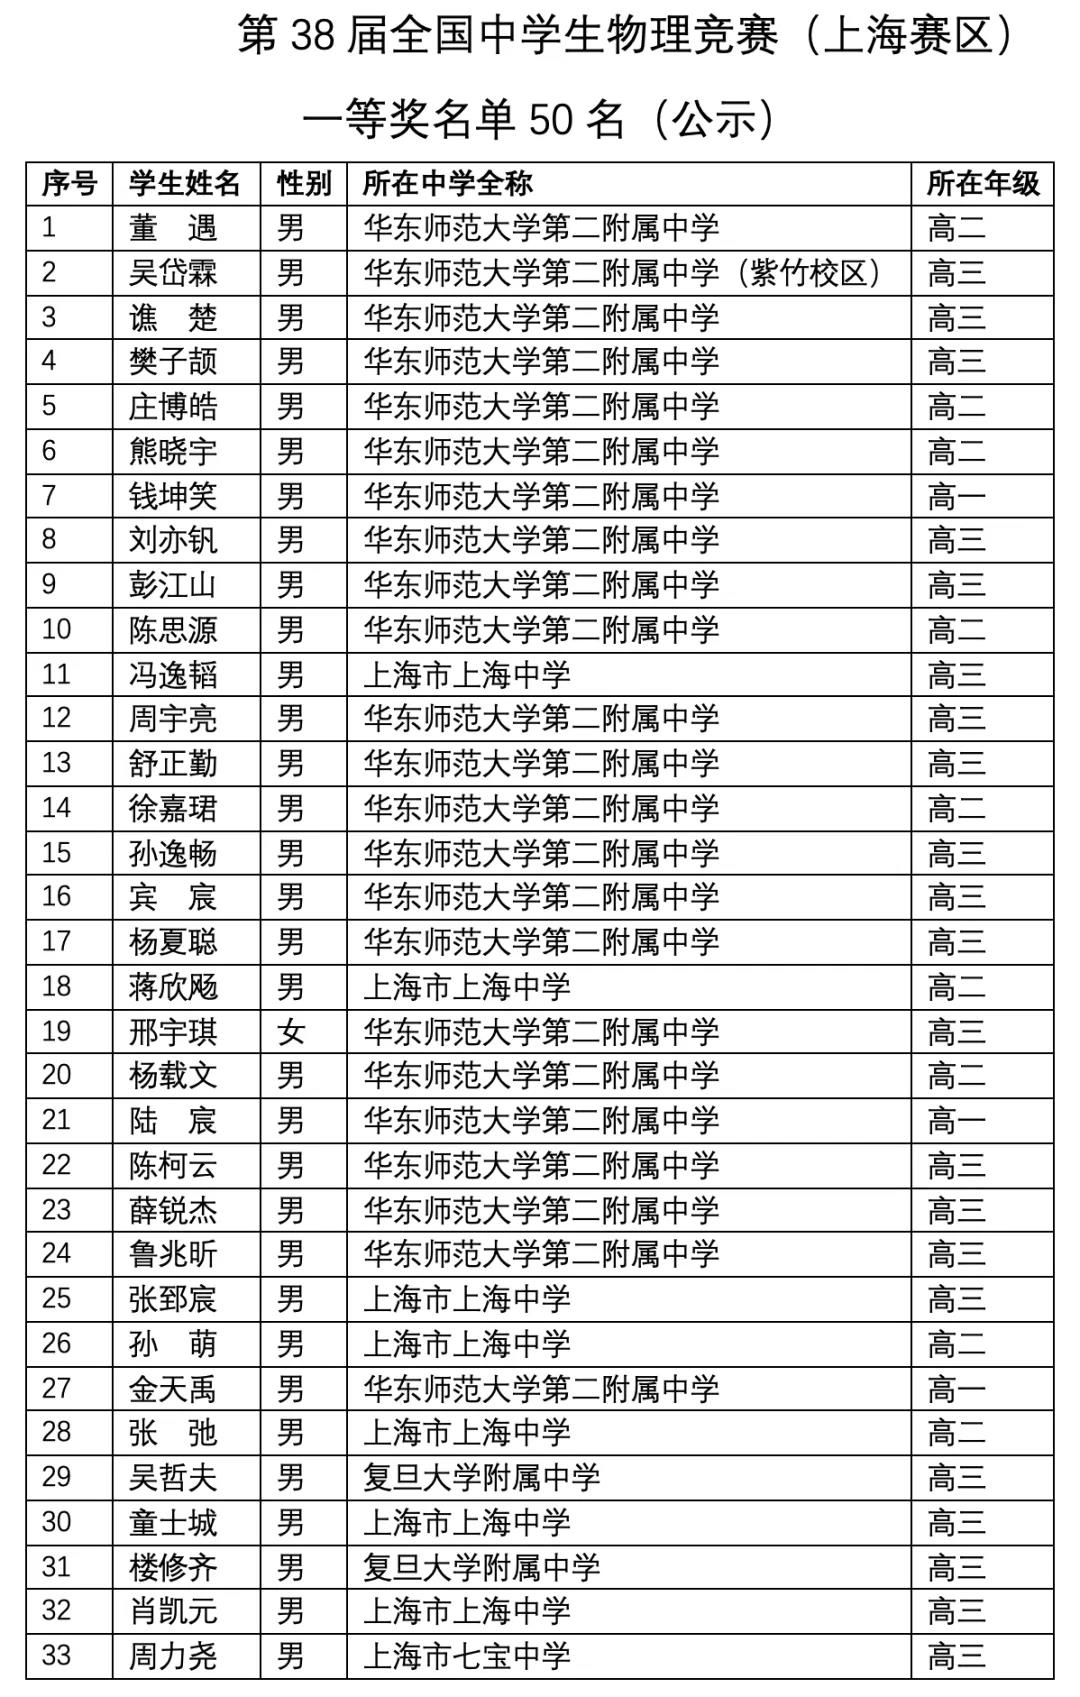 上海市2021年第38届全国中学生物理竞赛复赛省一获奖名单1